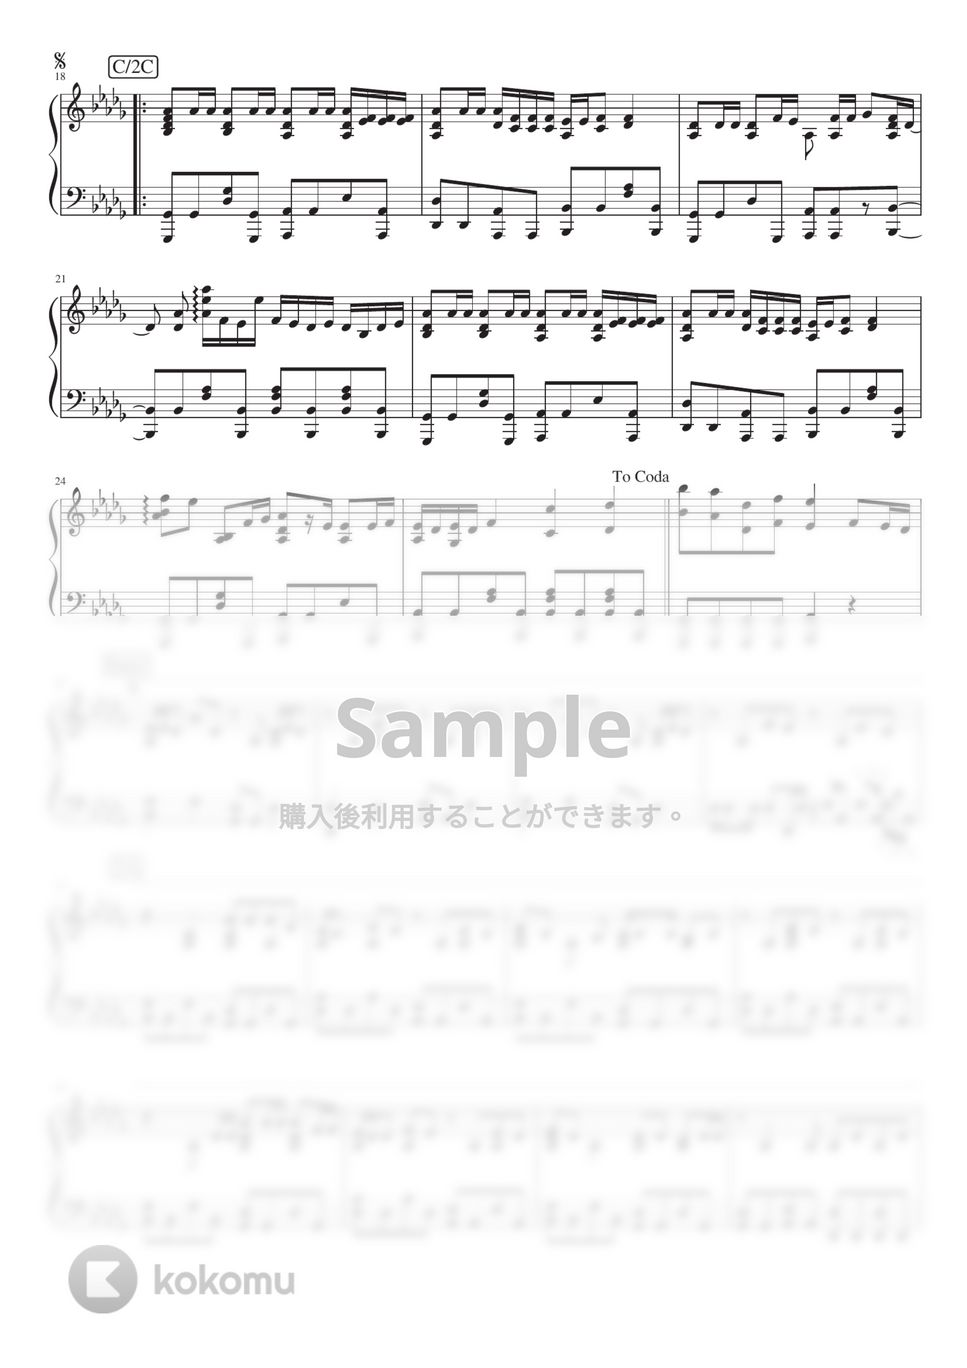 ヨルシカ - 夜行 (PianoSolo) by 深根 / Fukane